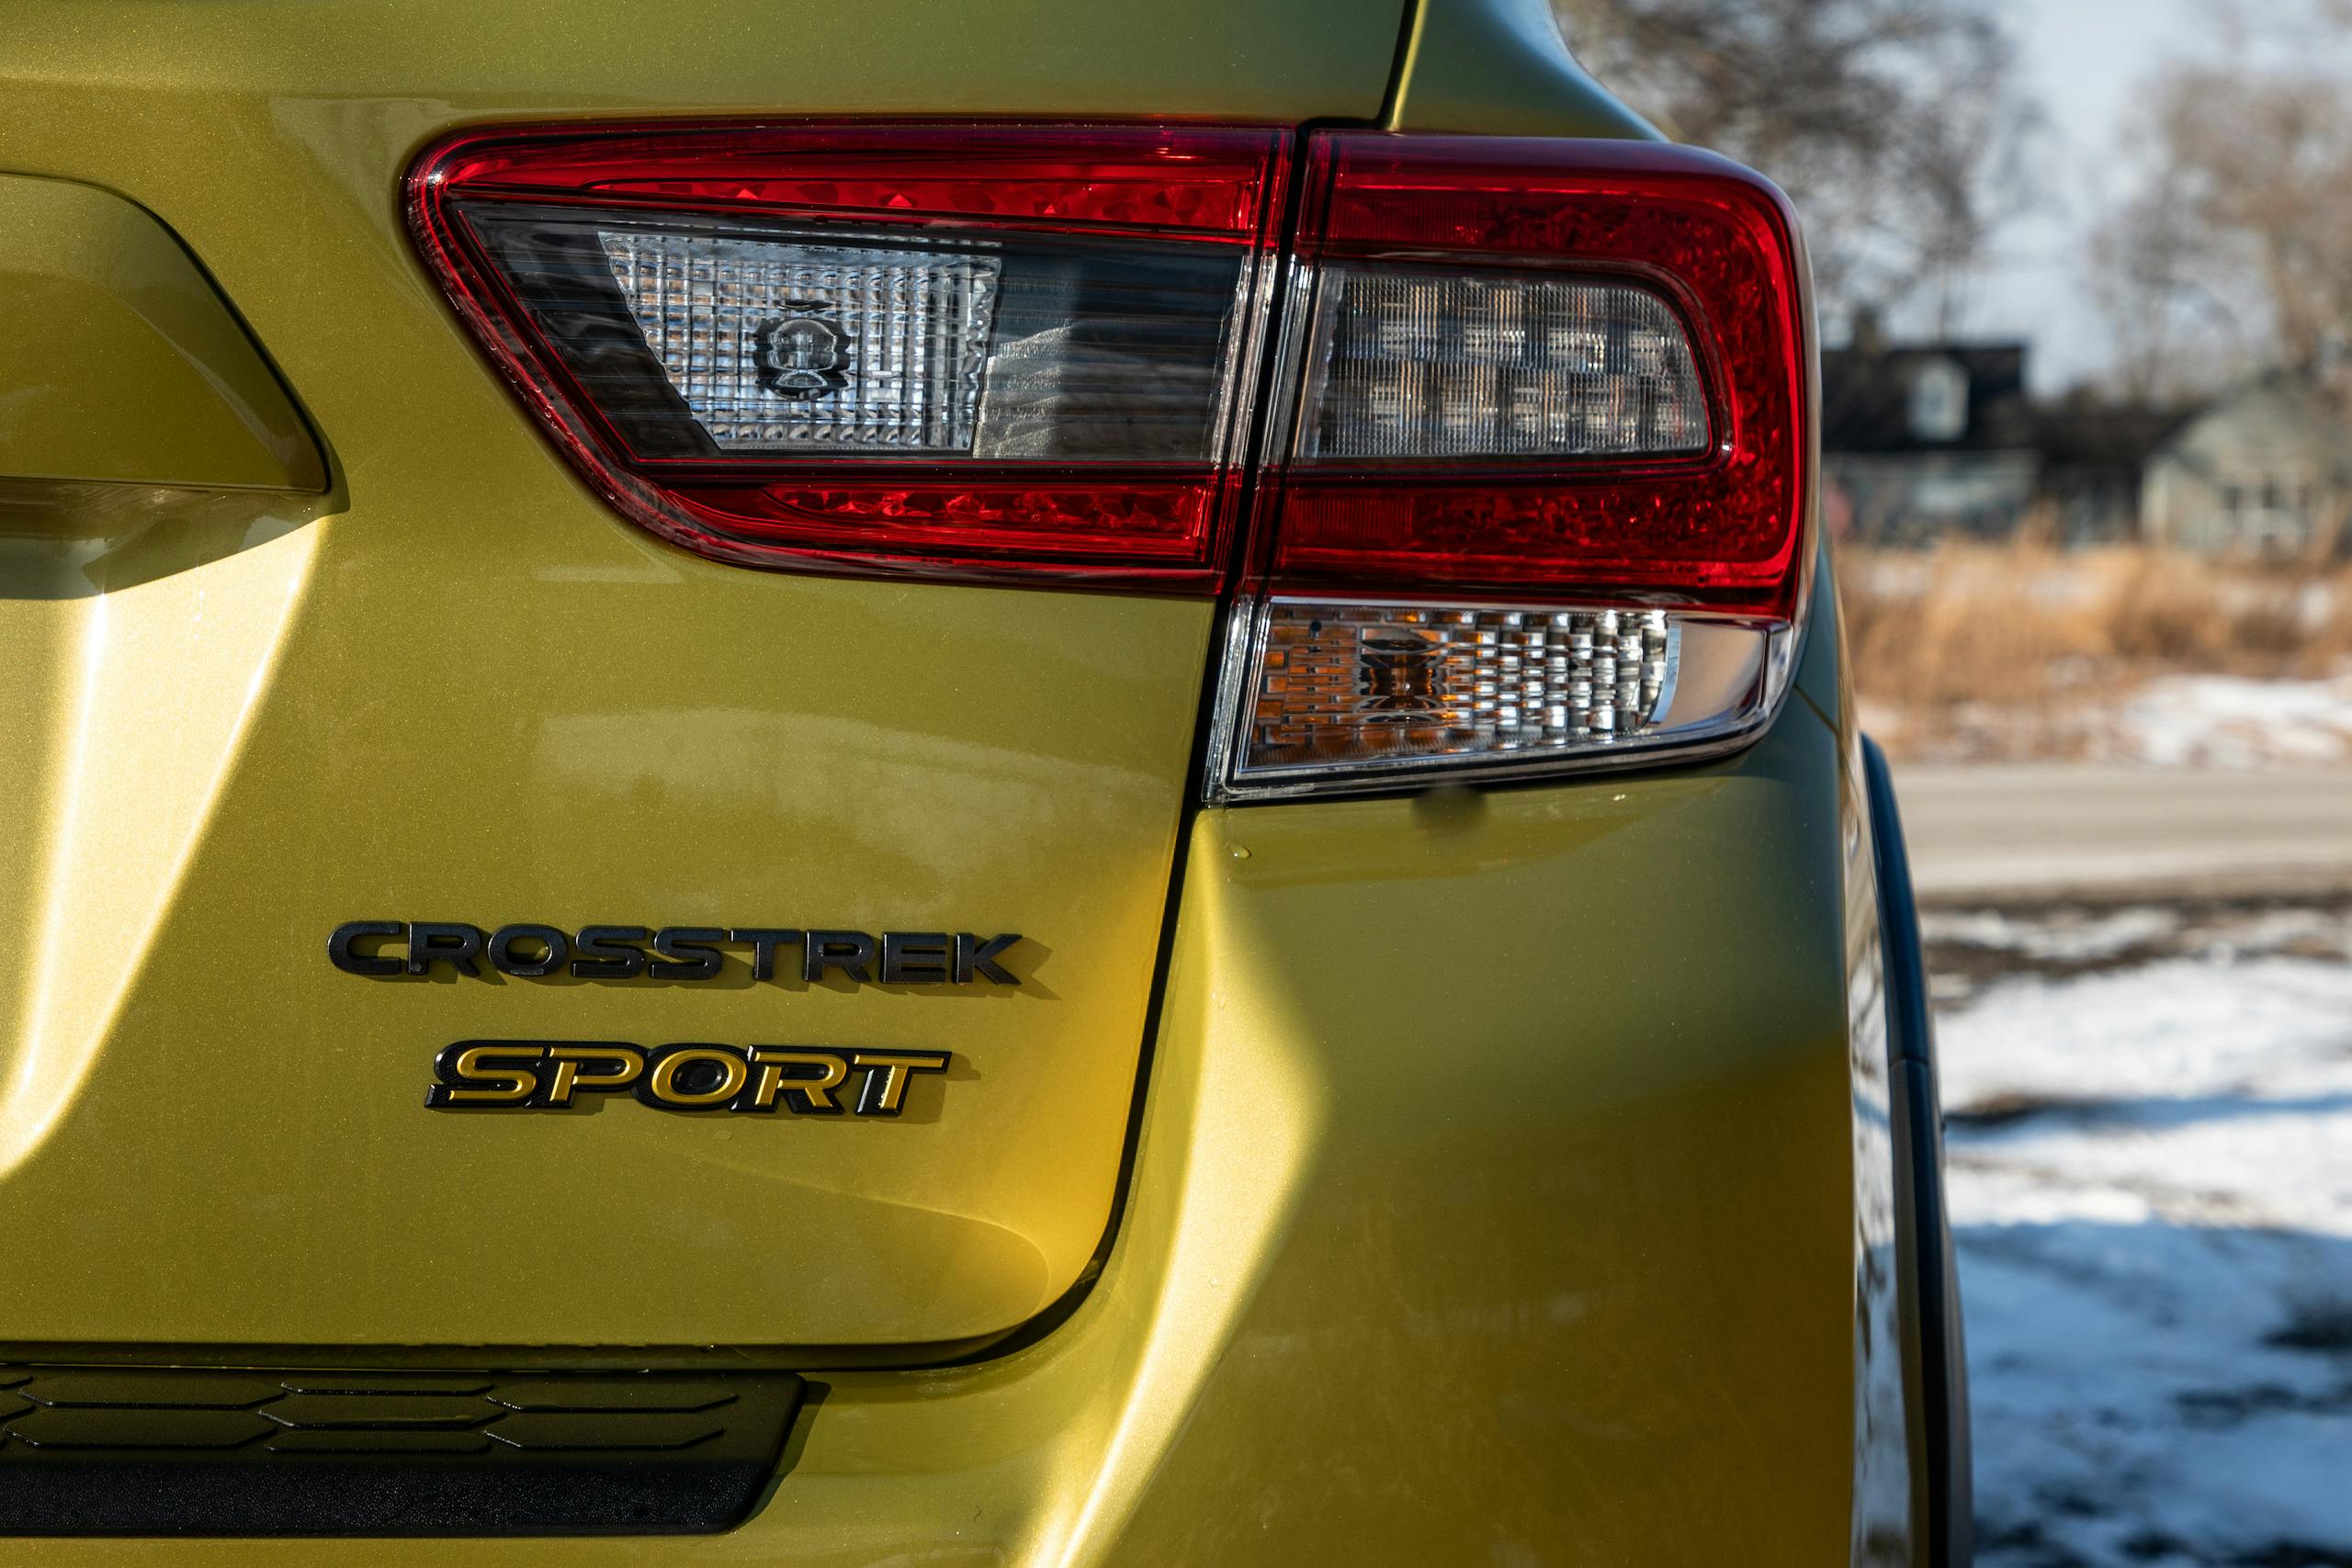 Subaru Crosstrek Sport rear badge